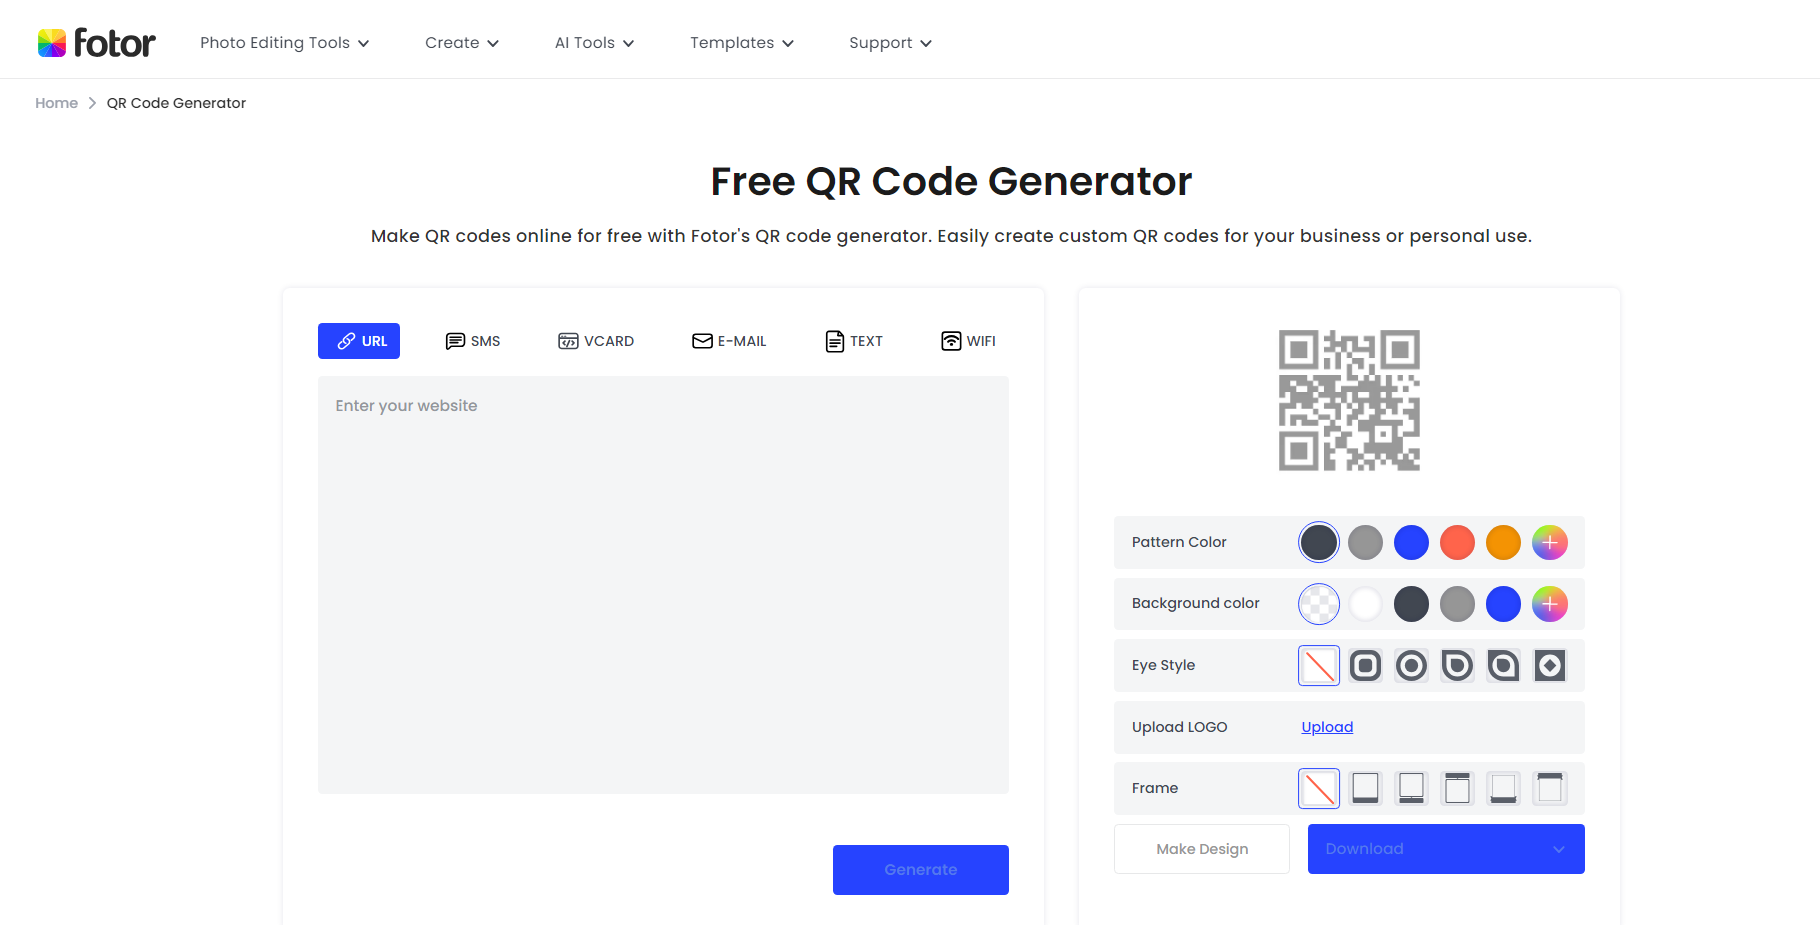 homepage of fotor free qr code generator